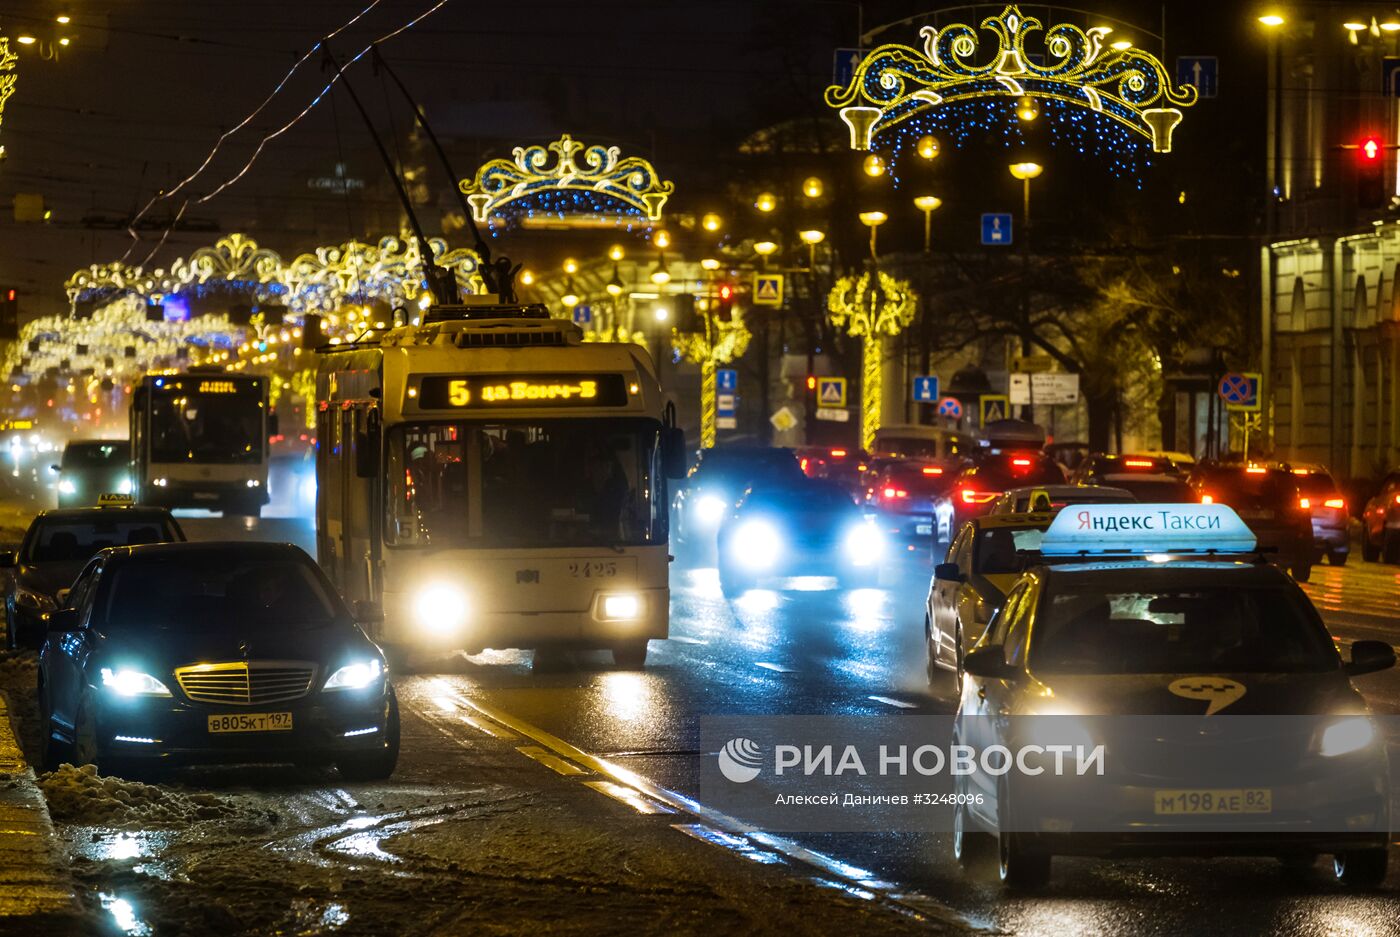 Новогоднее украшение Невского проспекта в Санкт-Петербурге